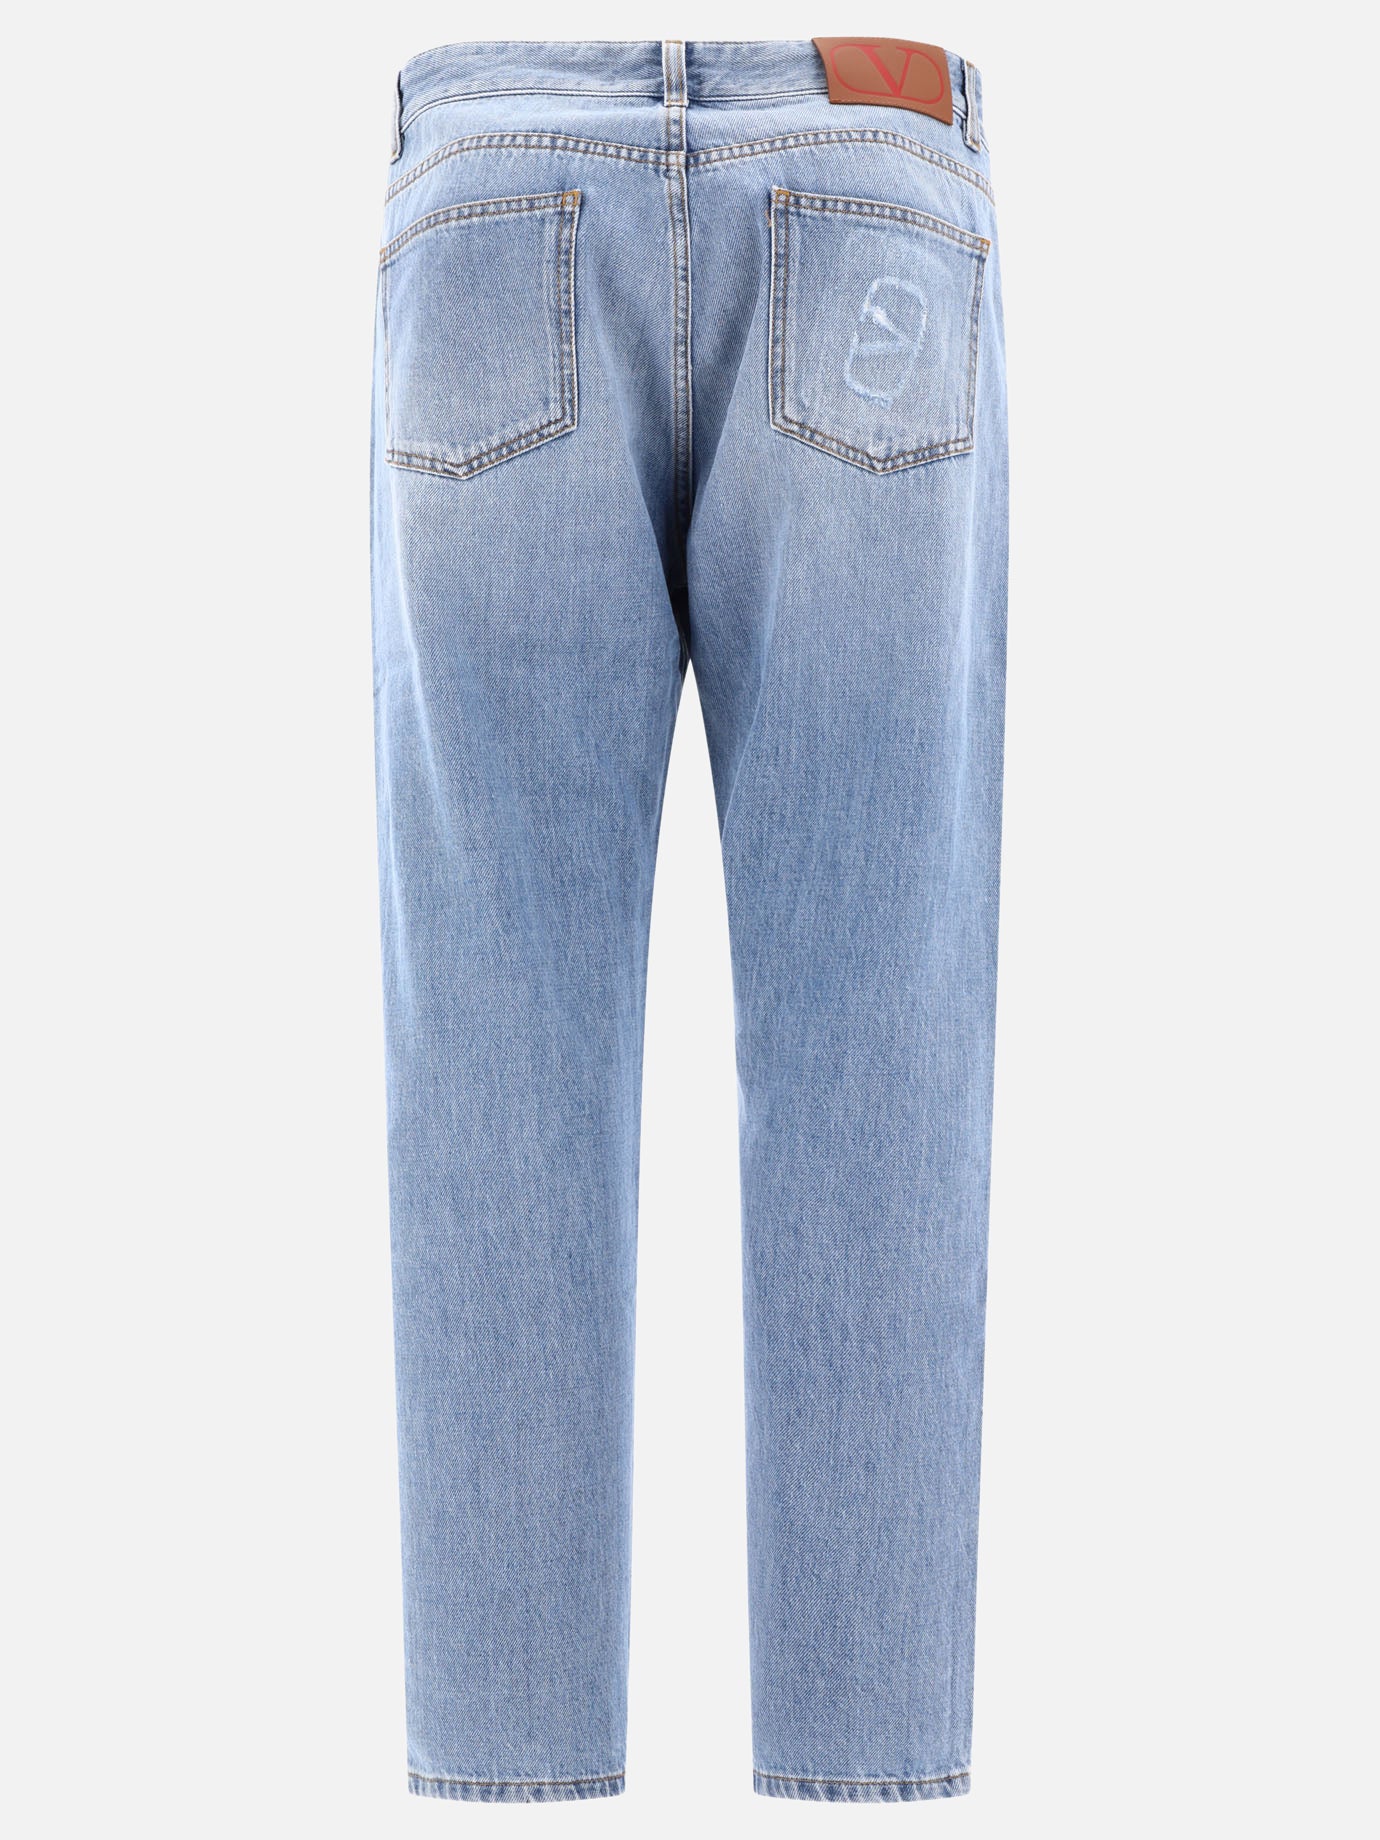 "VLogo" jeans